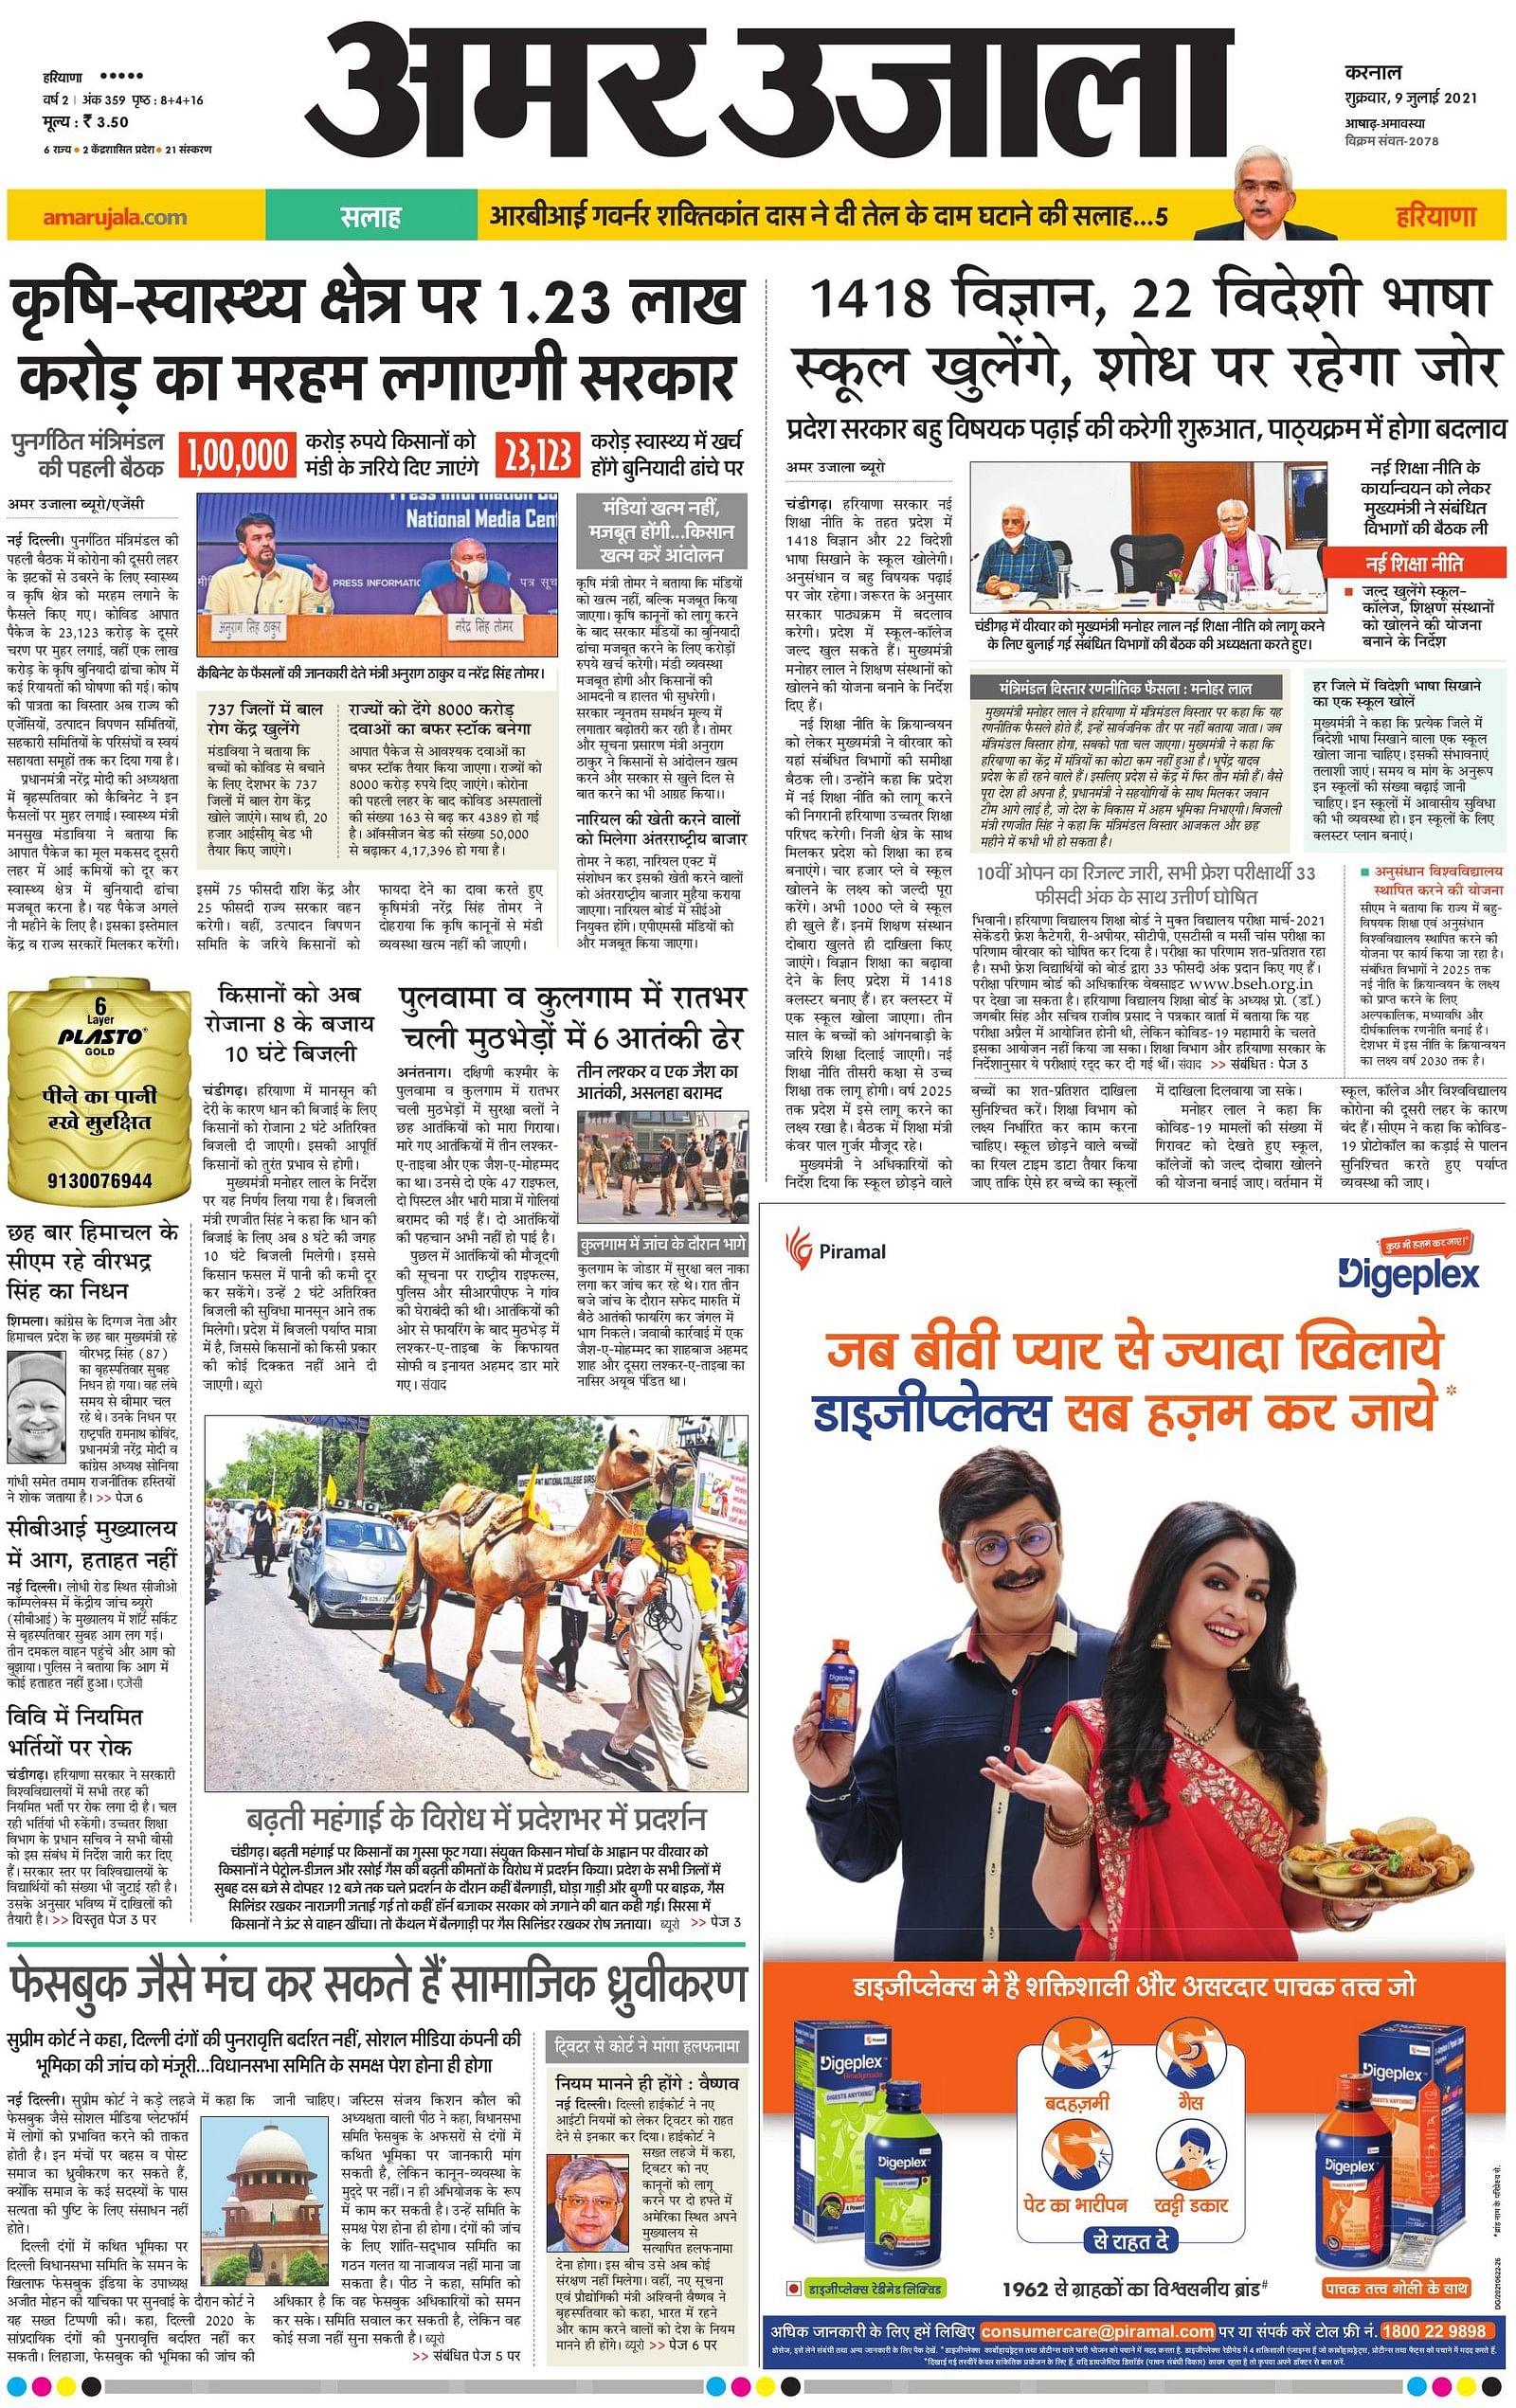 thinathanthi news paper pdf